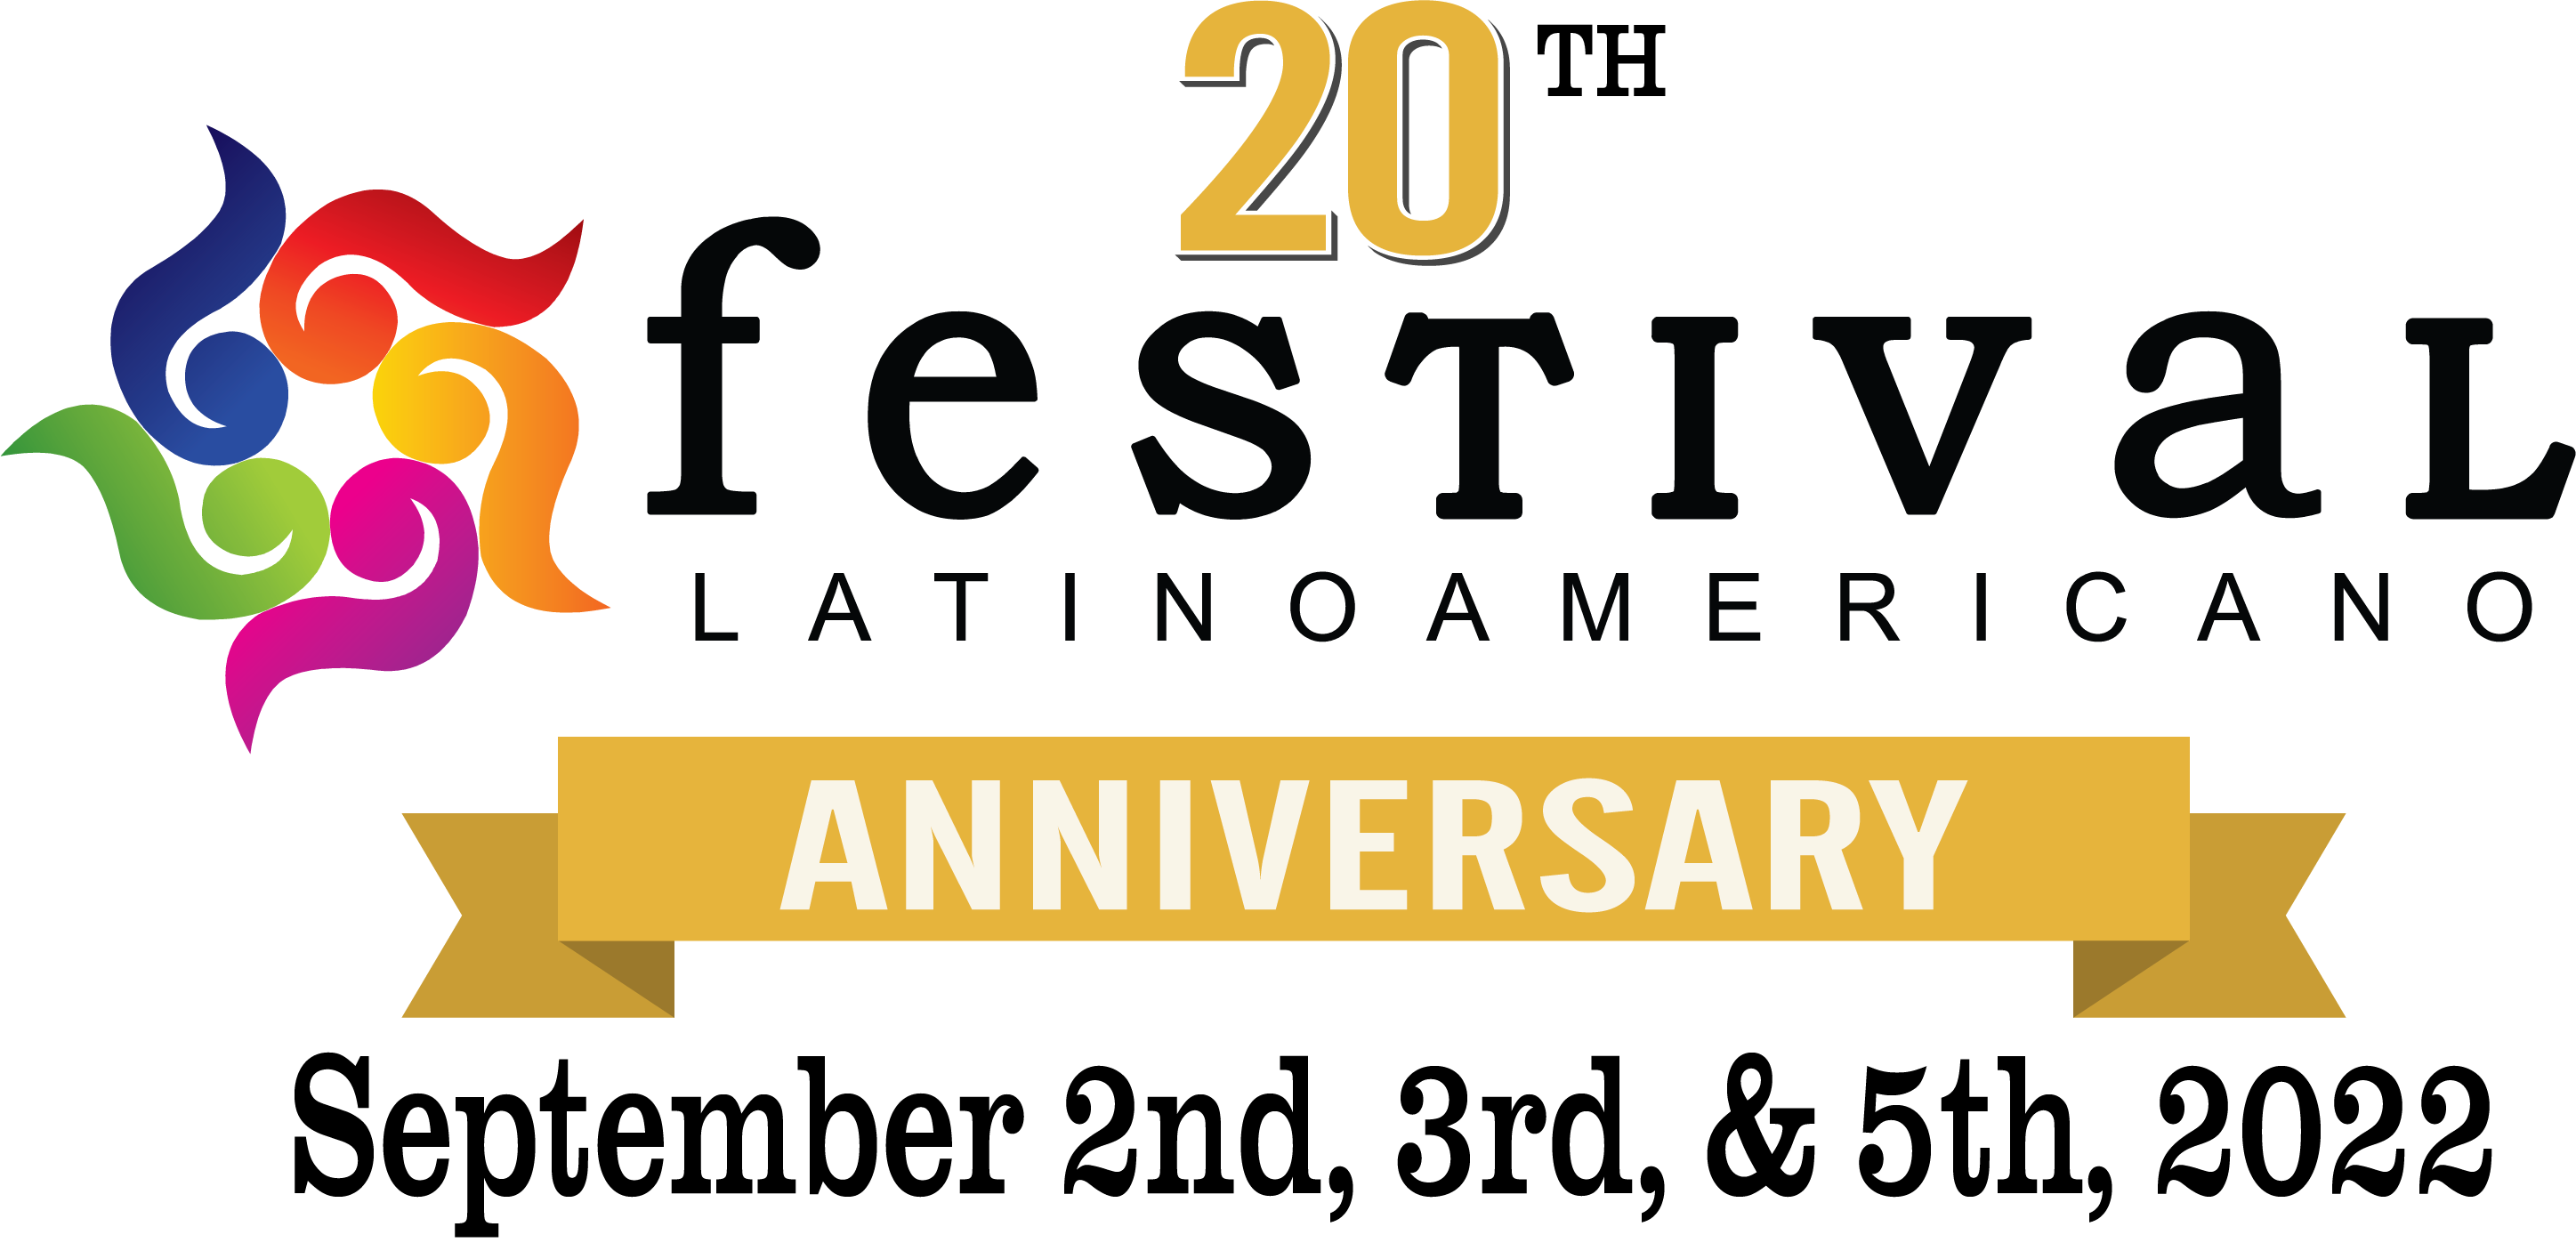 <h1 class="tribe-events-single-event-title">Festival Latinoamericano</h1>